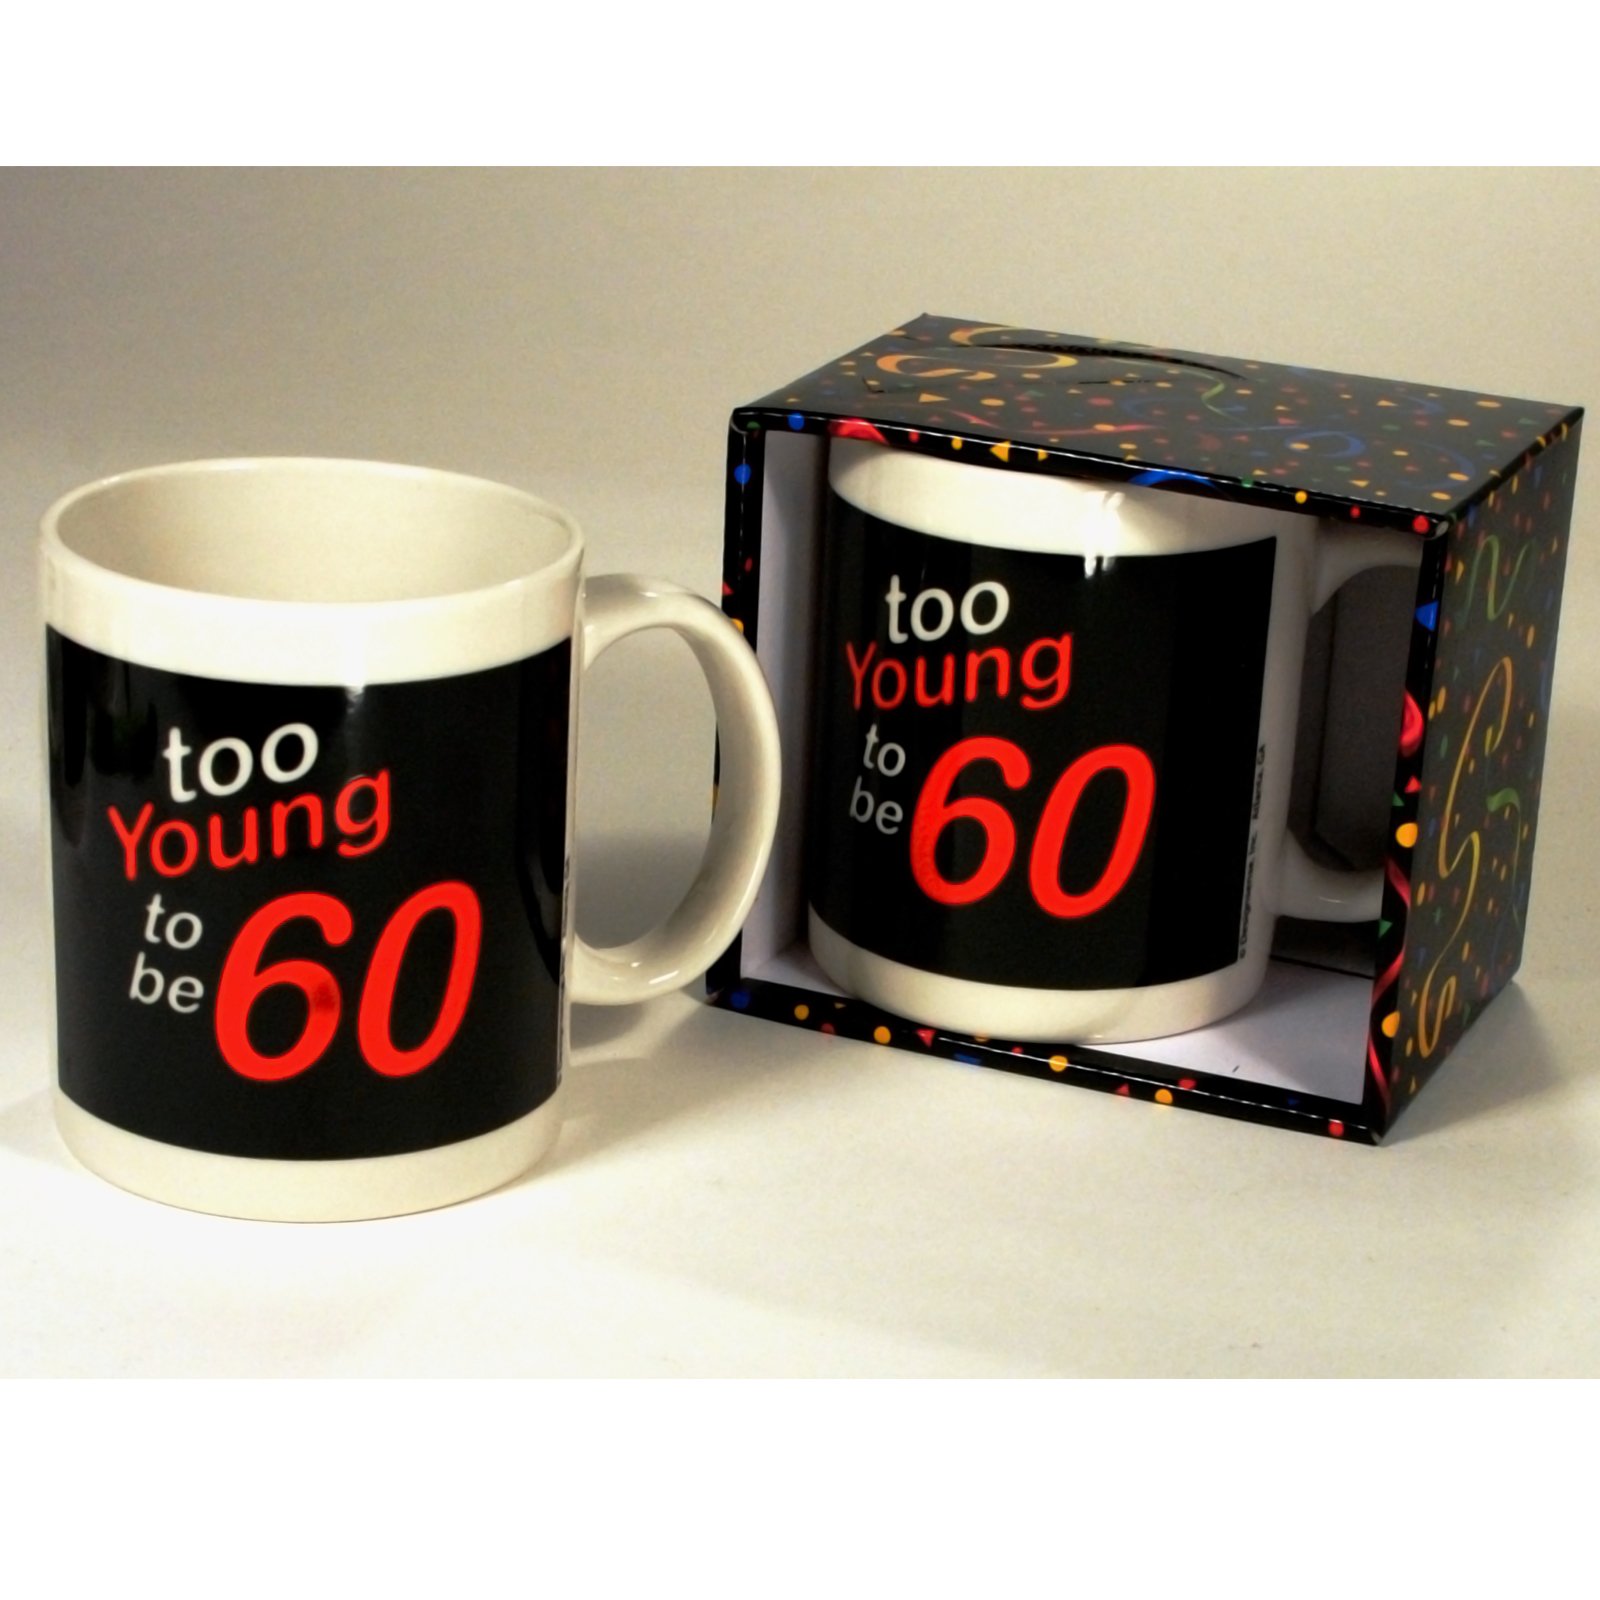 Too Young to be 60 Mug